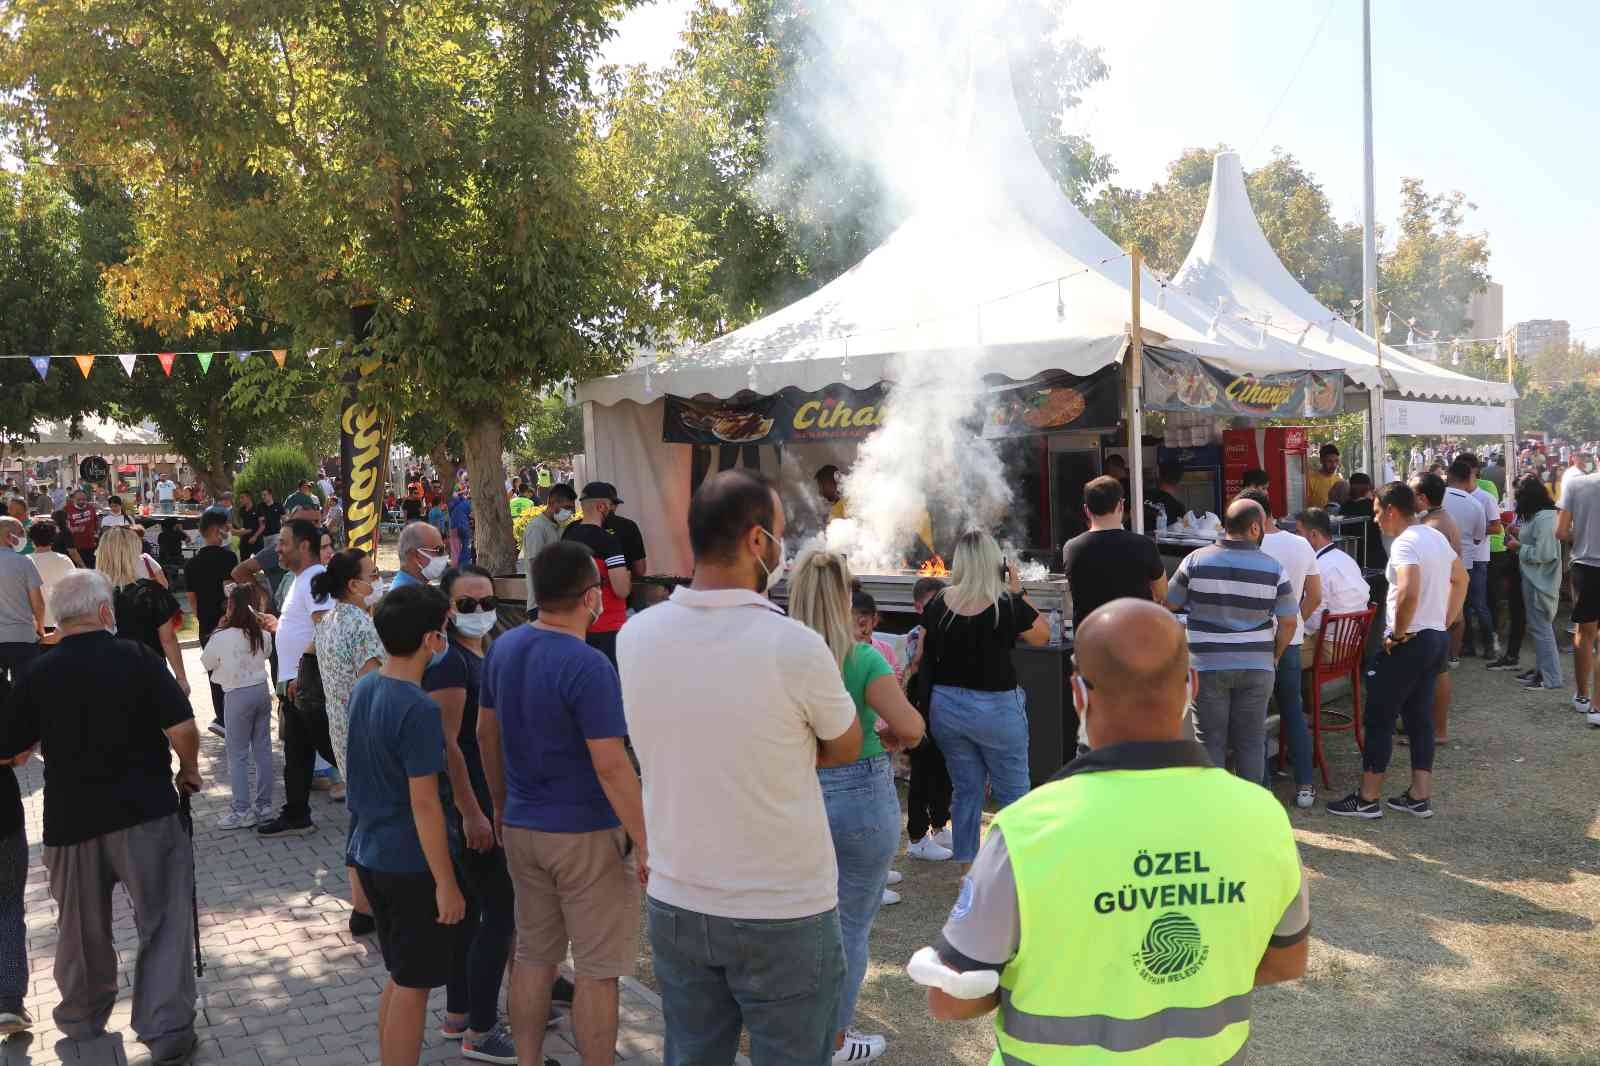 Uluslararası Adana Lezzet Festivali şehre 150 milyon TL katkı sağladı #adana